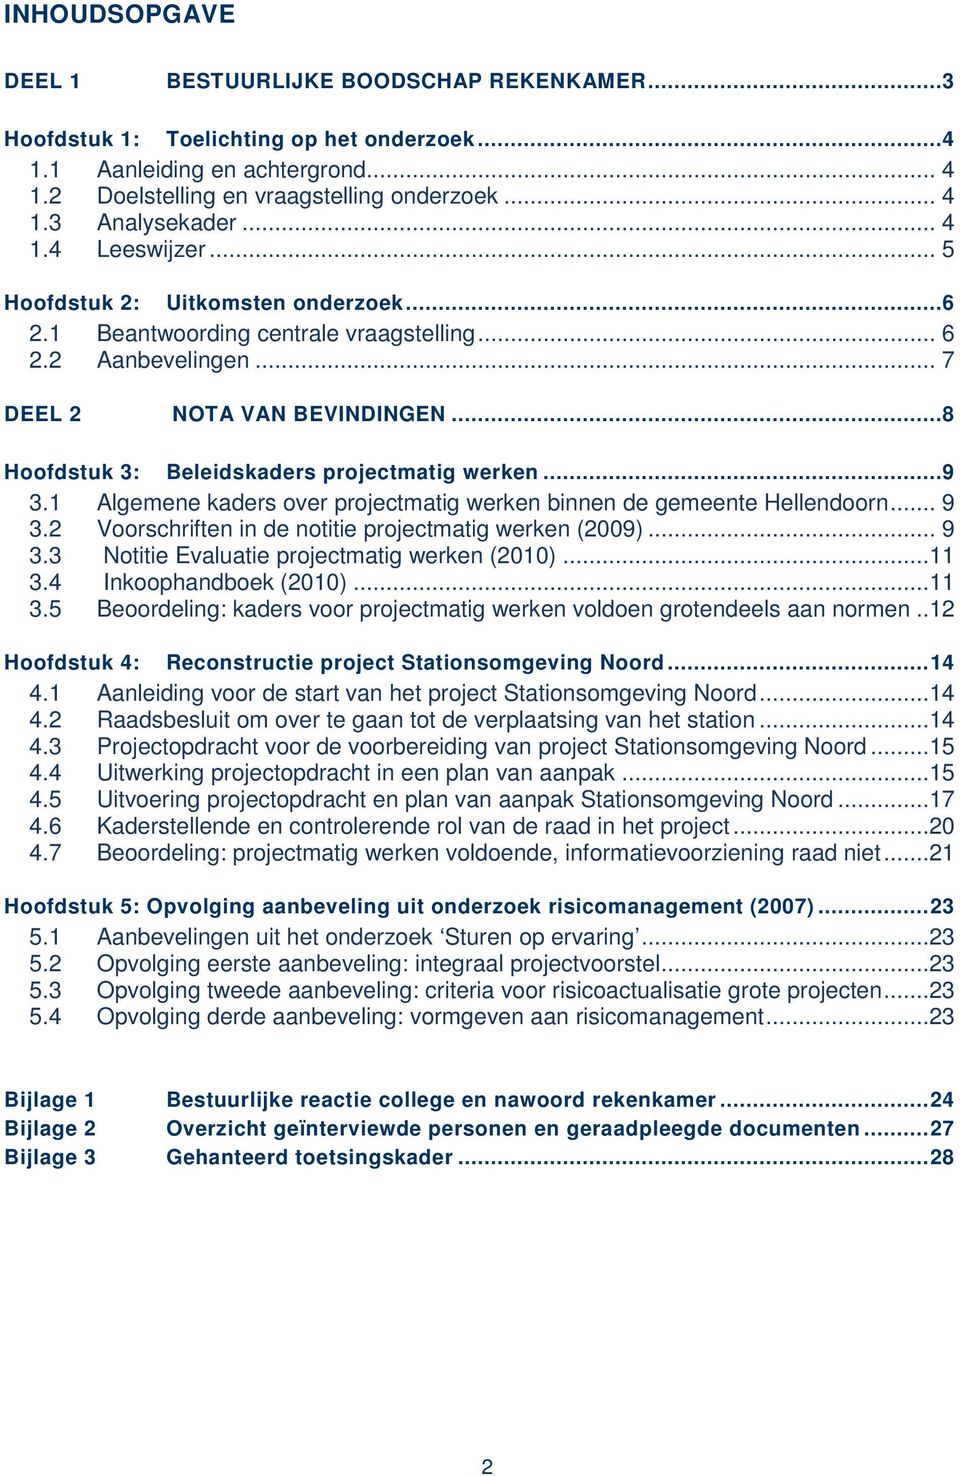 .. 8 Hoofdstuk 3: Beleidskaders projectmatig werken... 9 3.1 Algemene kaders over projectmatig werken binnen de gemeente Hellendoorn... 9 3.2 Voorschriften in de notitie projectmatig werken (2009).